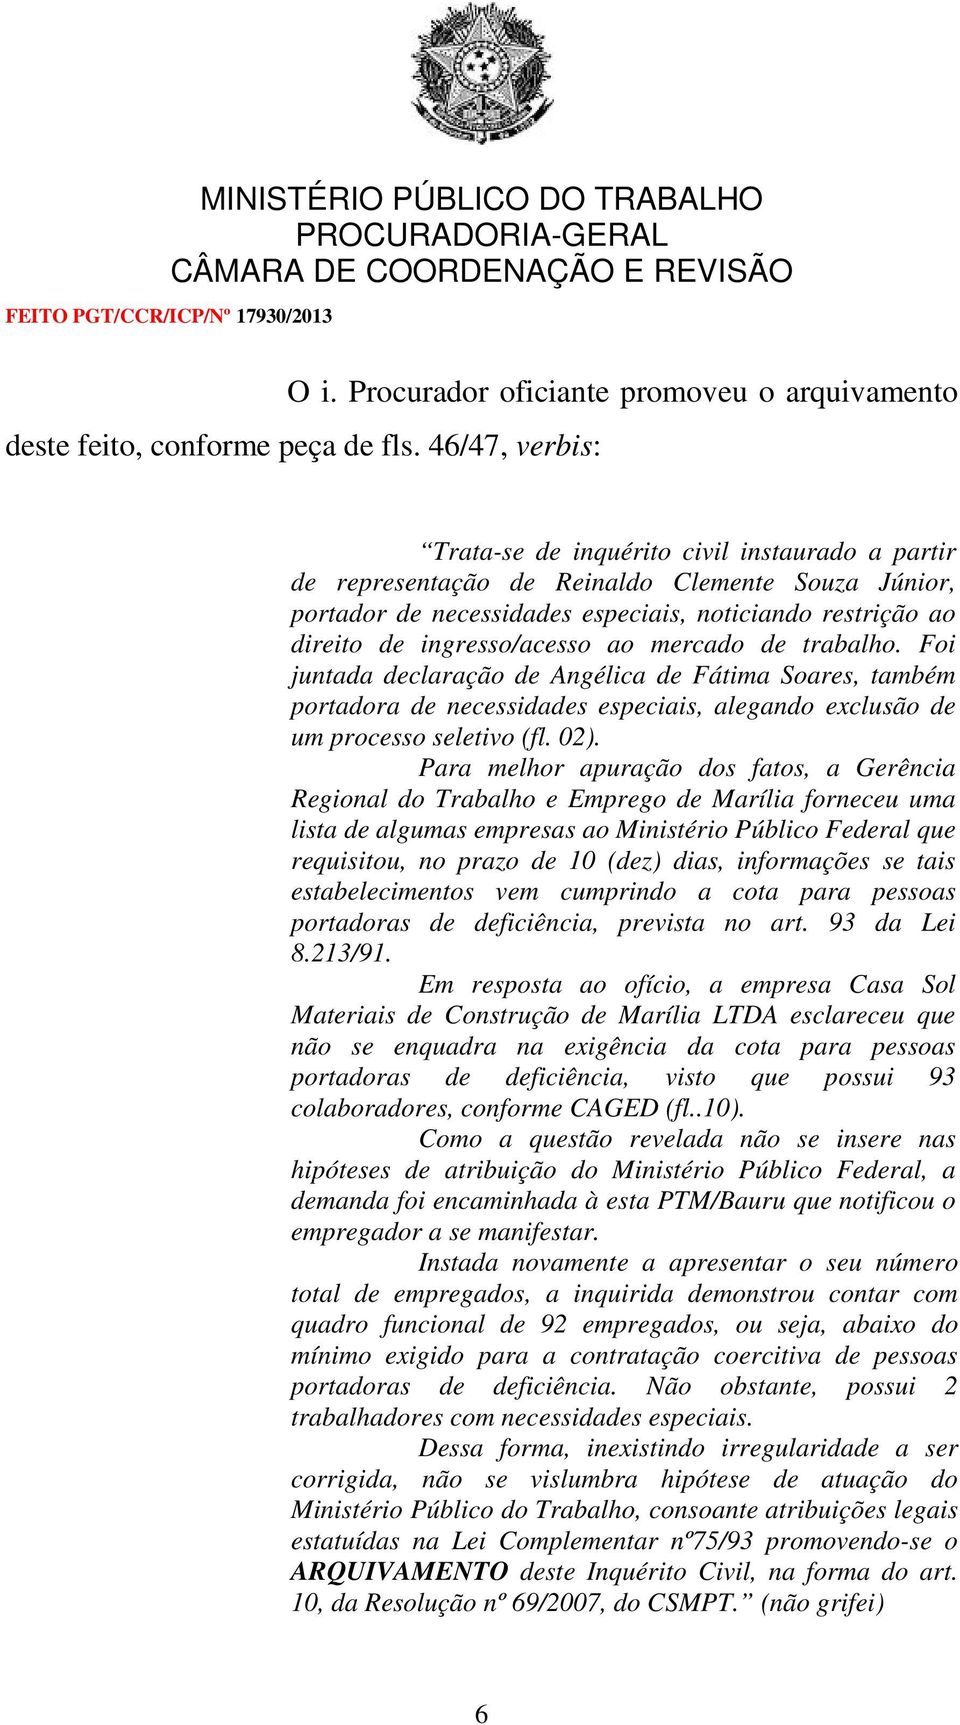 ingresso/acesso ao mercado de trabalho. Foi juntada declaração de Angélica de Fátima Soares, também portadora de necessidades especiais, alegando exclusão de um processo seletivo (fl. 02).